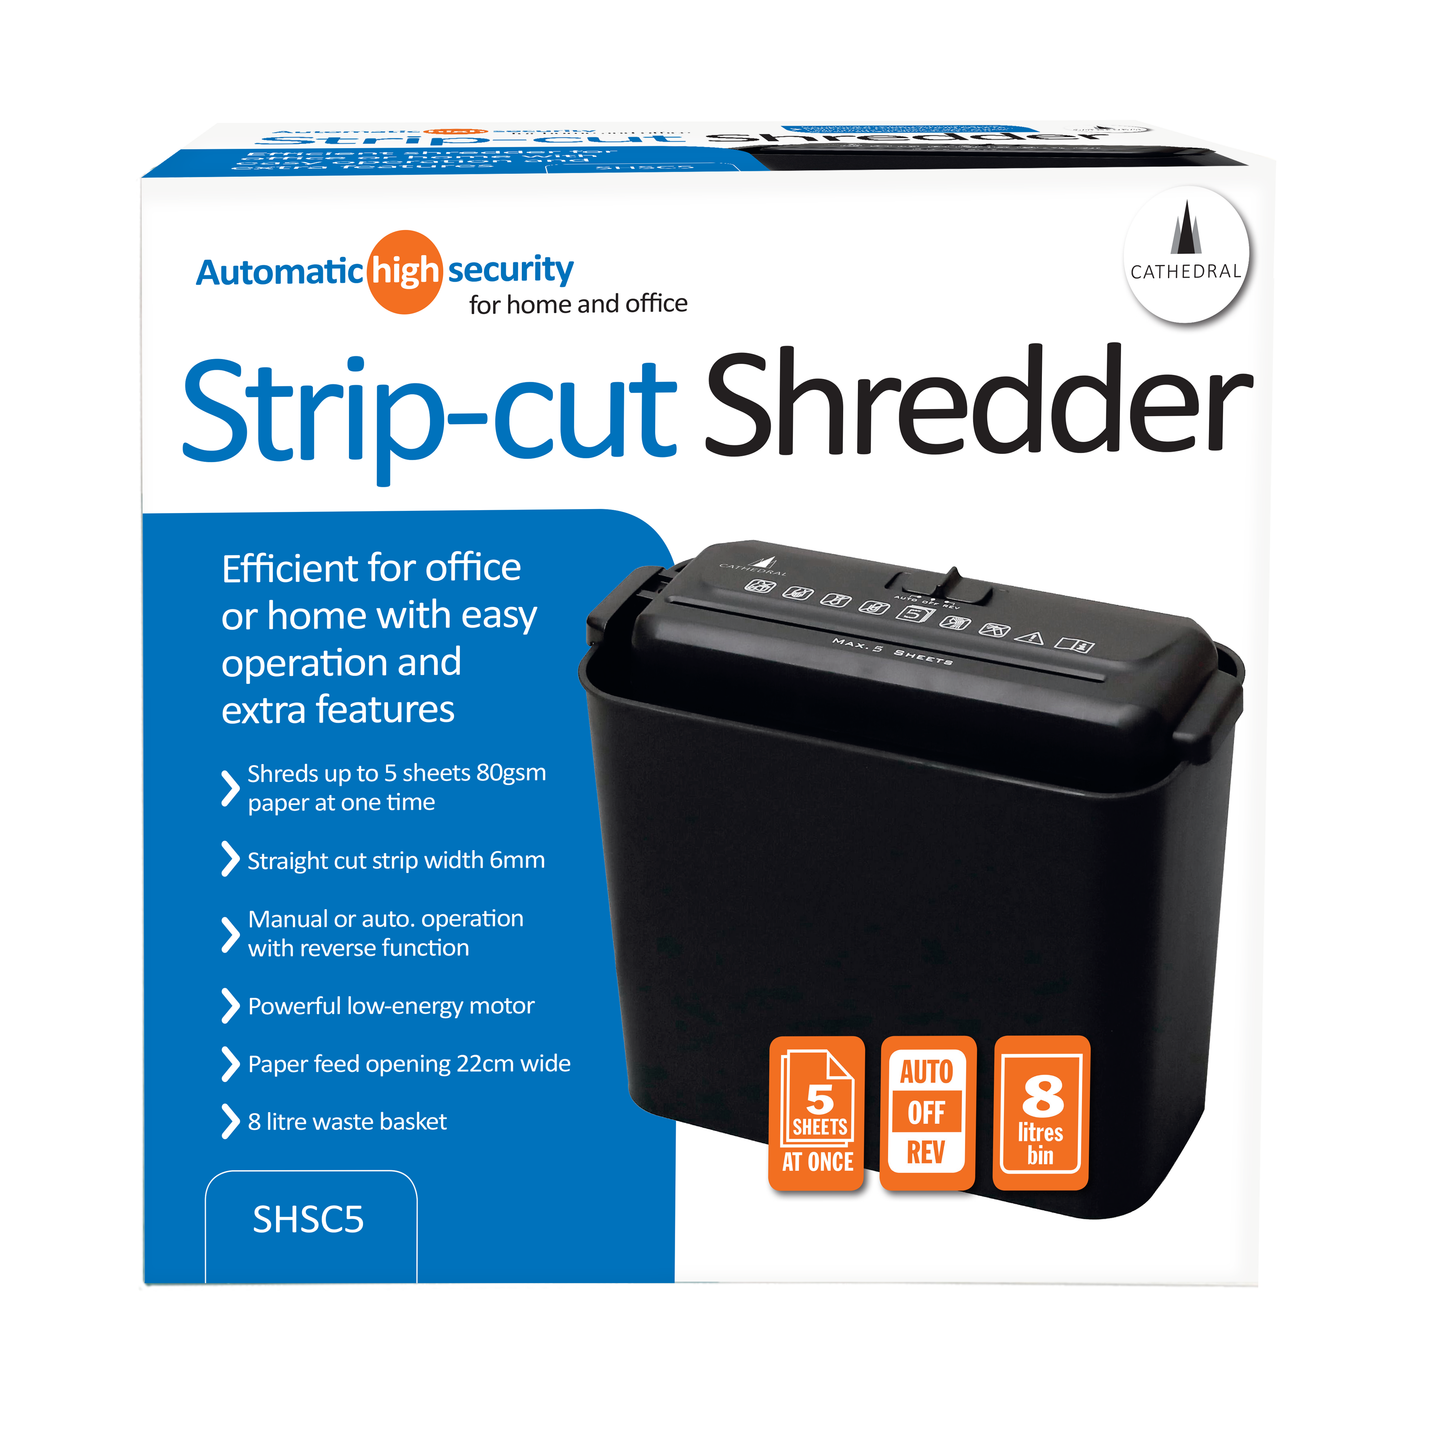 Strip Cut 5 Sheet Shredder with 8 Litre Basket